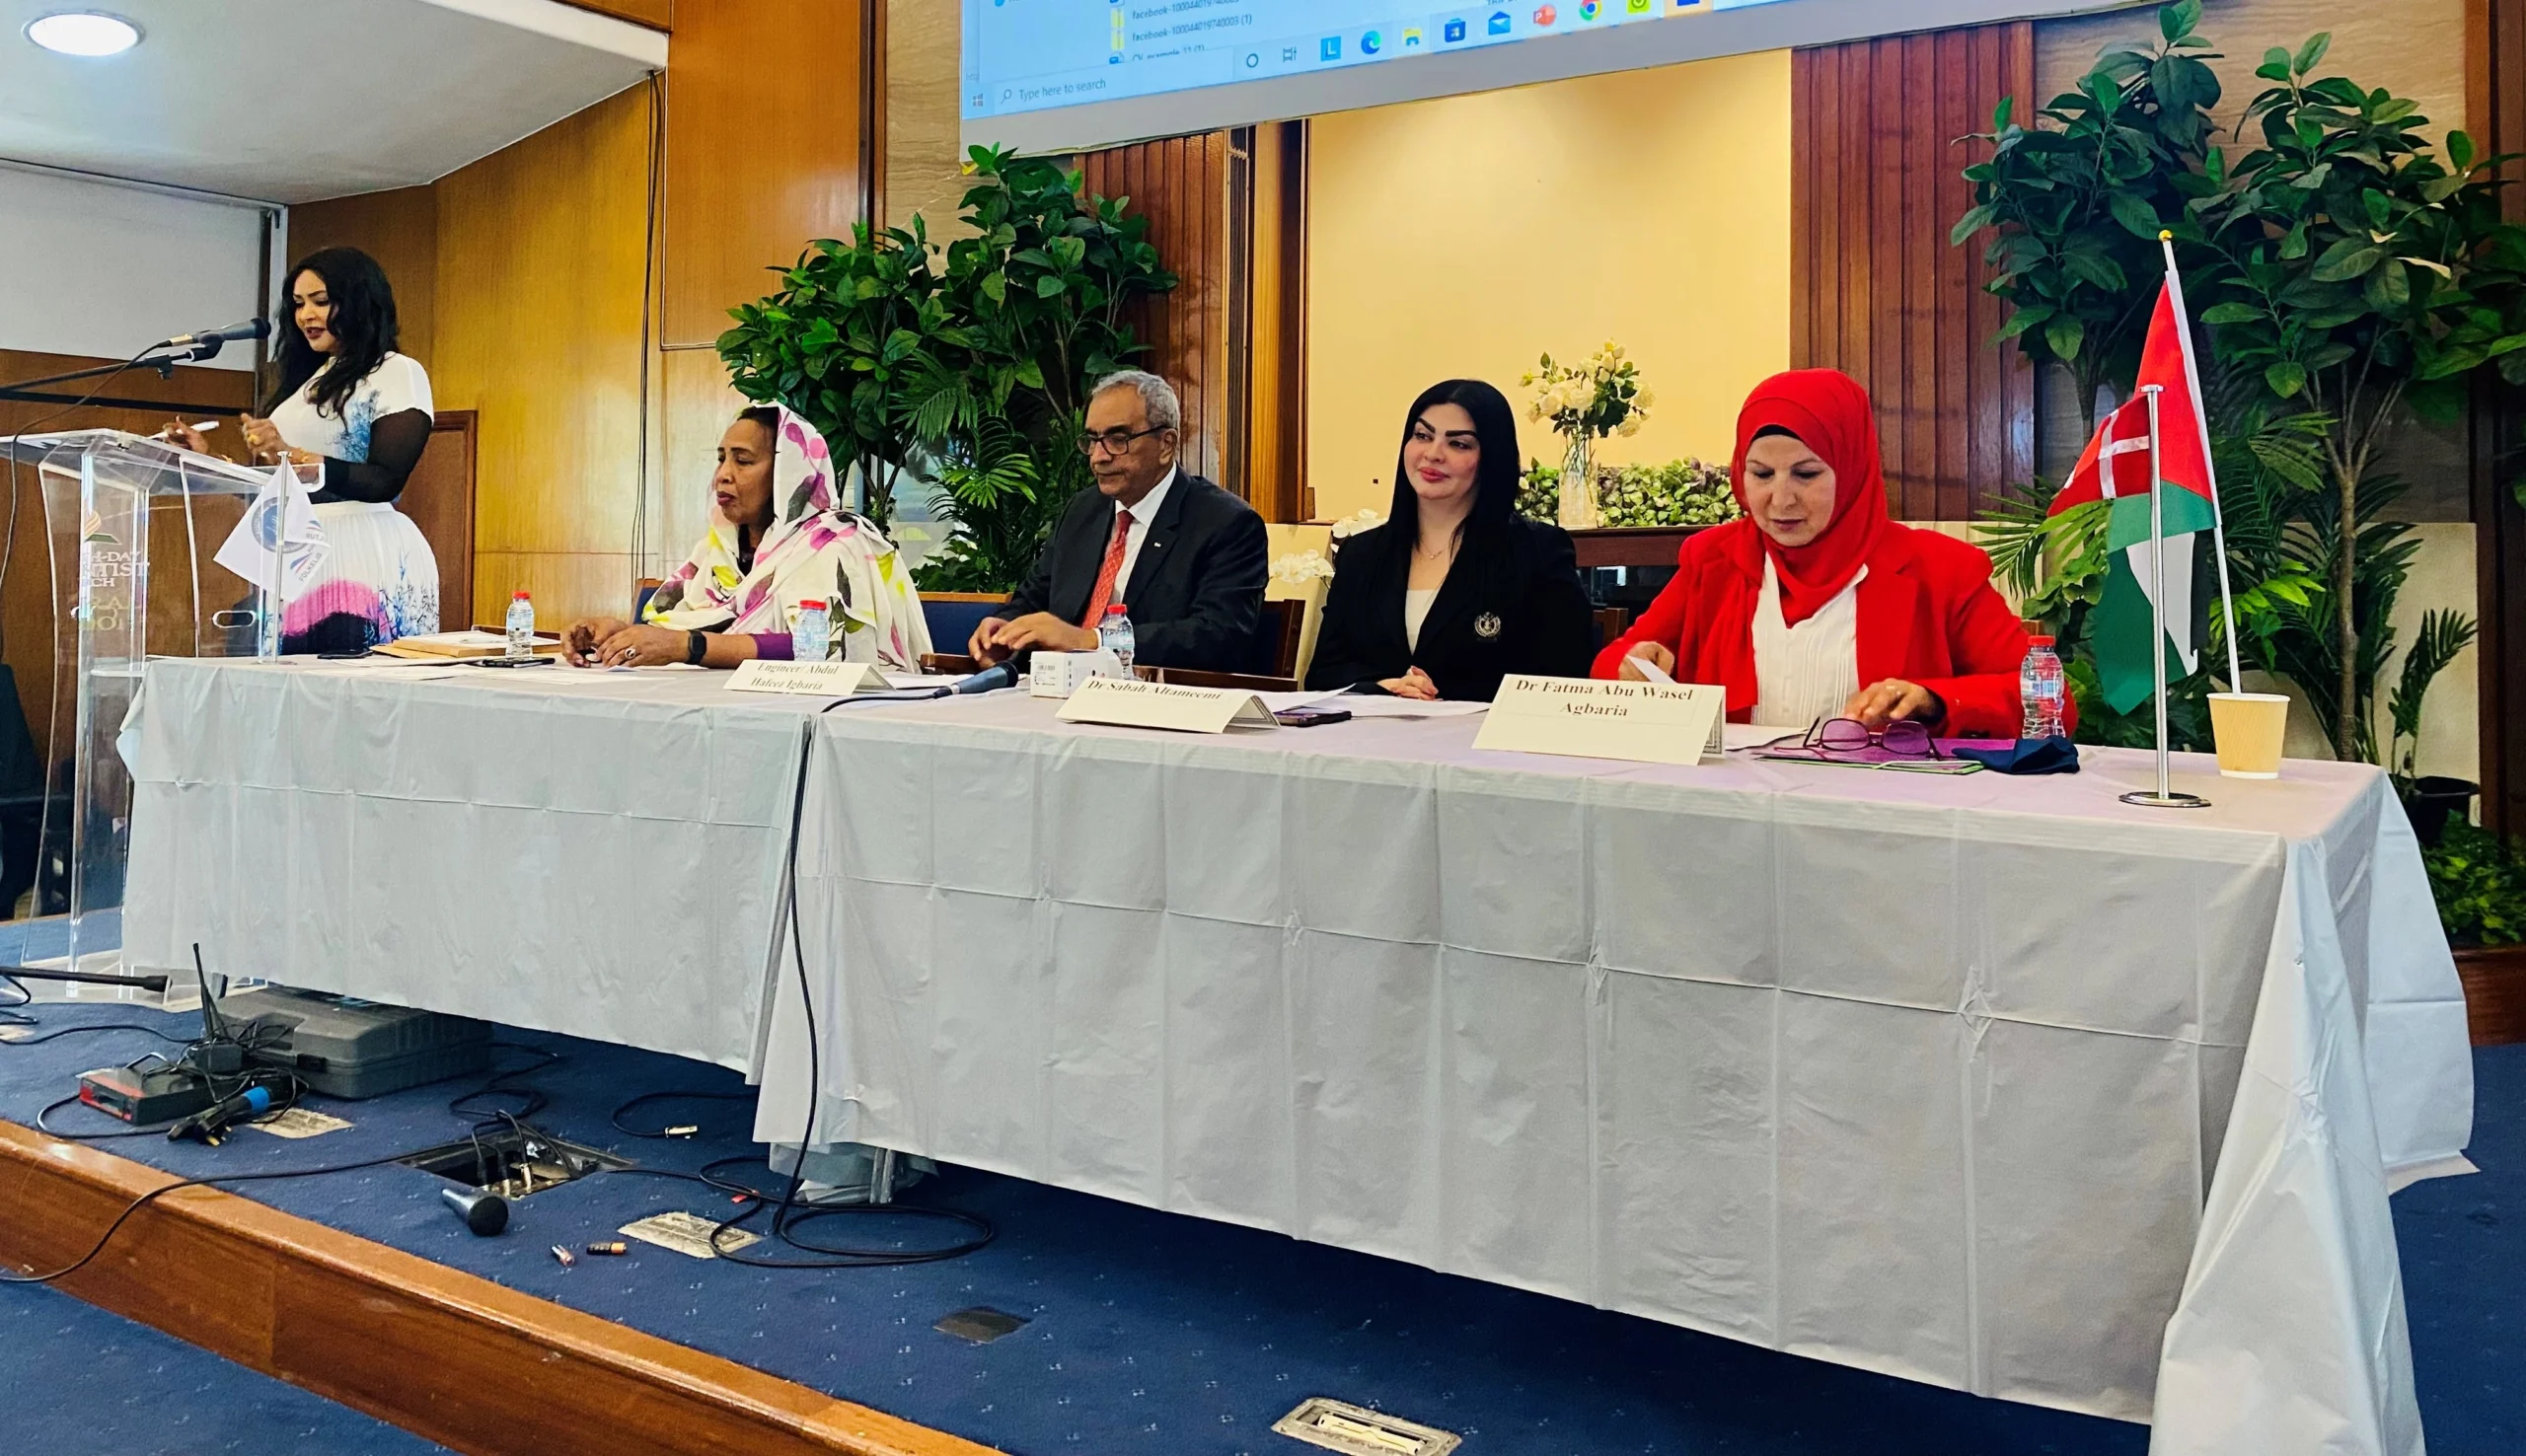 مشاركة عراقية وعربية في ملتقى المرأة وحوار الحضارات في لندن لعام 2023